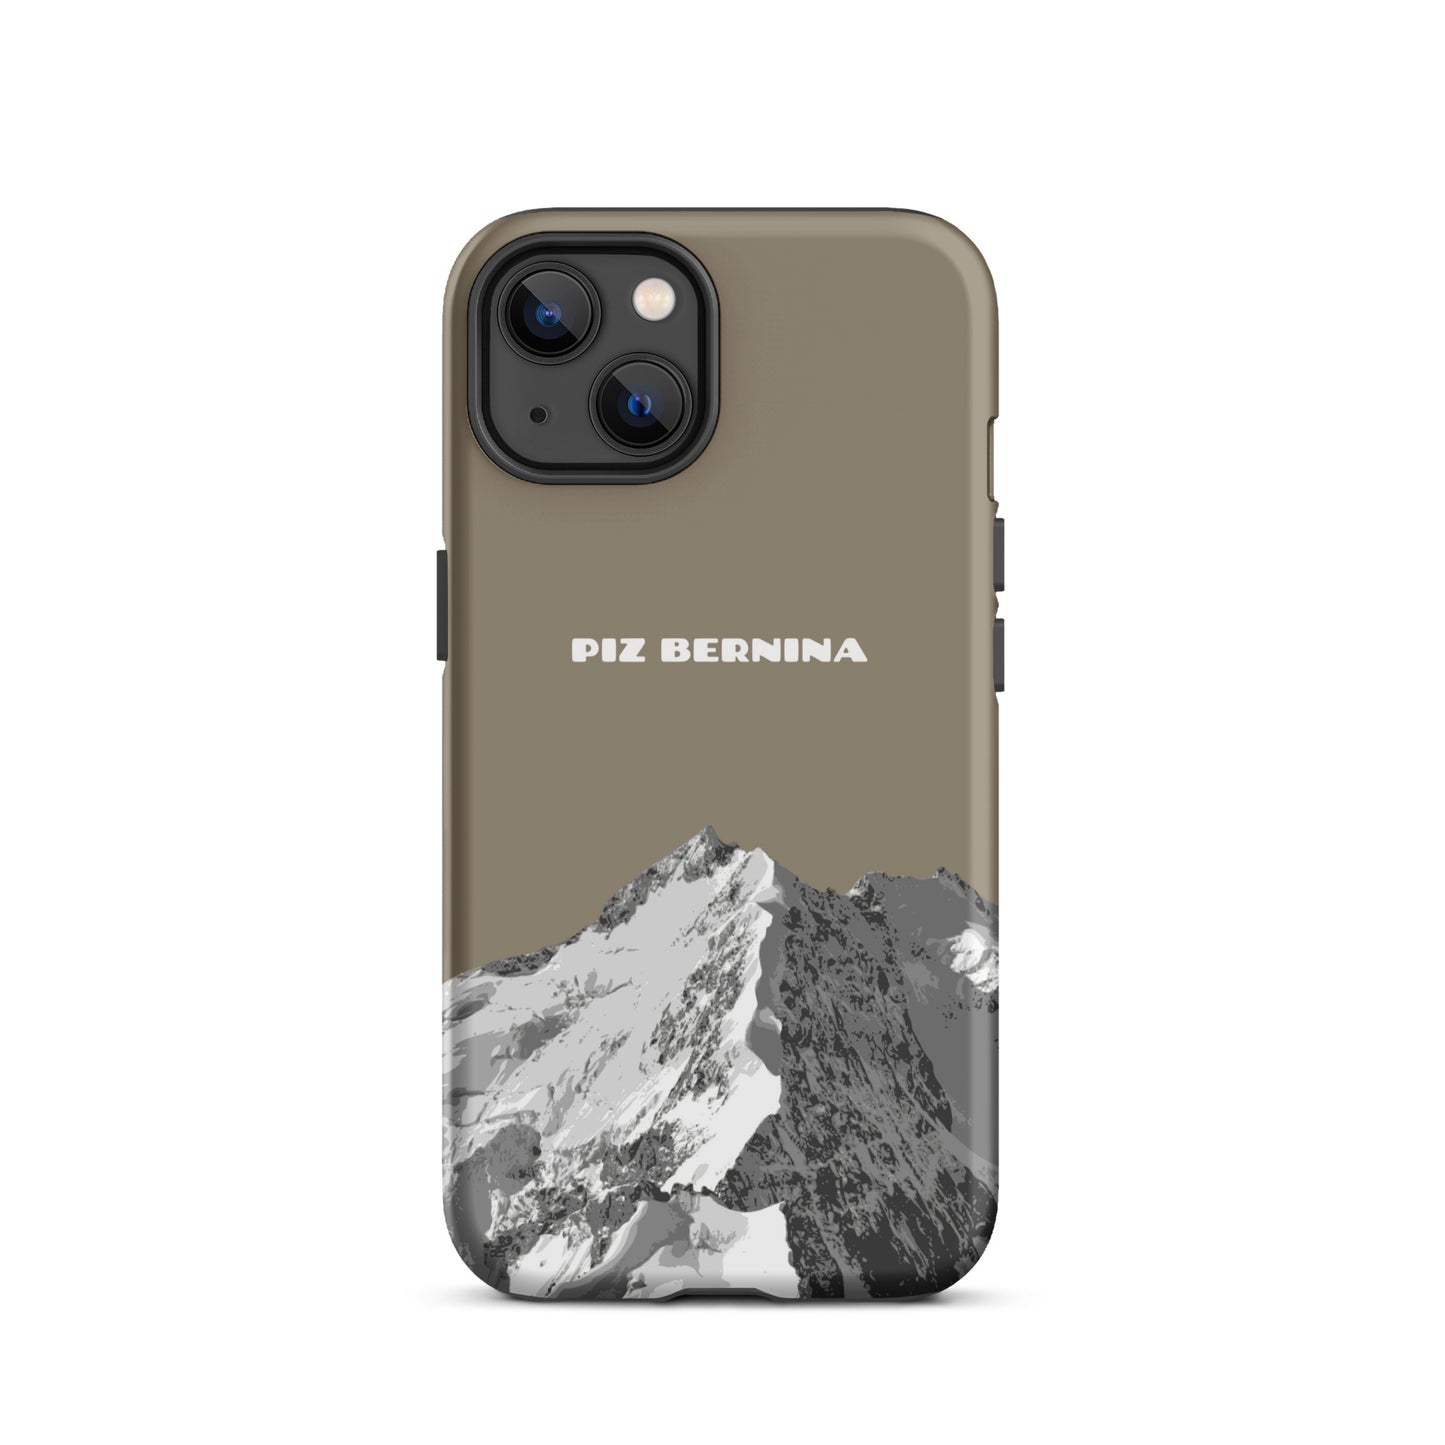 Hülle für das iPhone 13 von Apple in der Farbe Graubraun, dass den Piz Bernina in Graubünden zeigt.